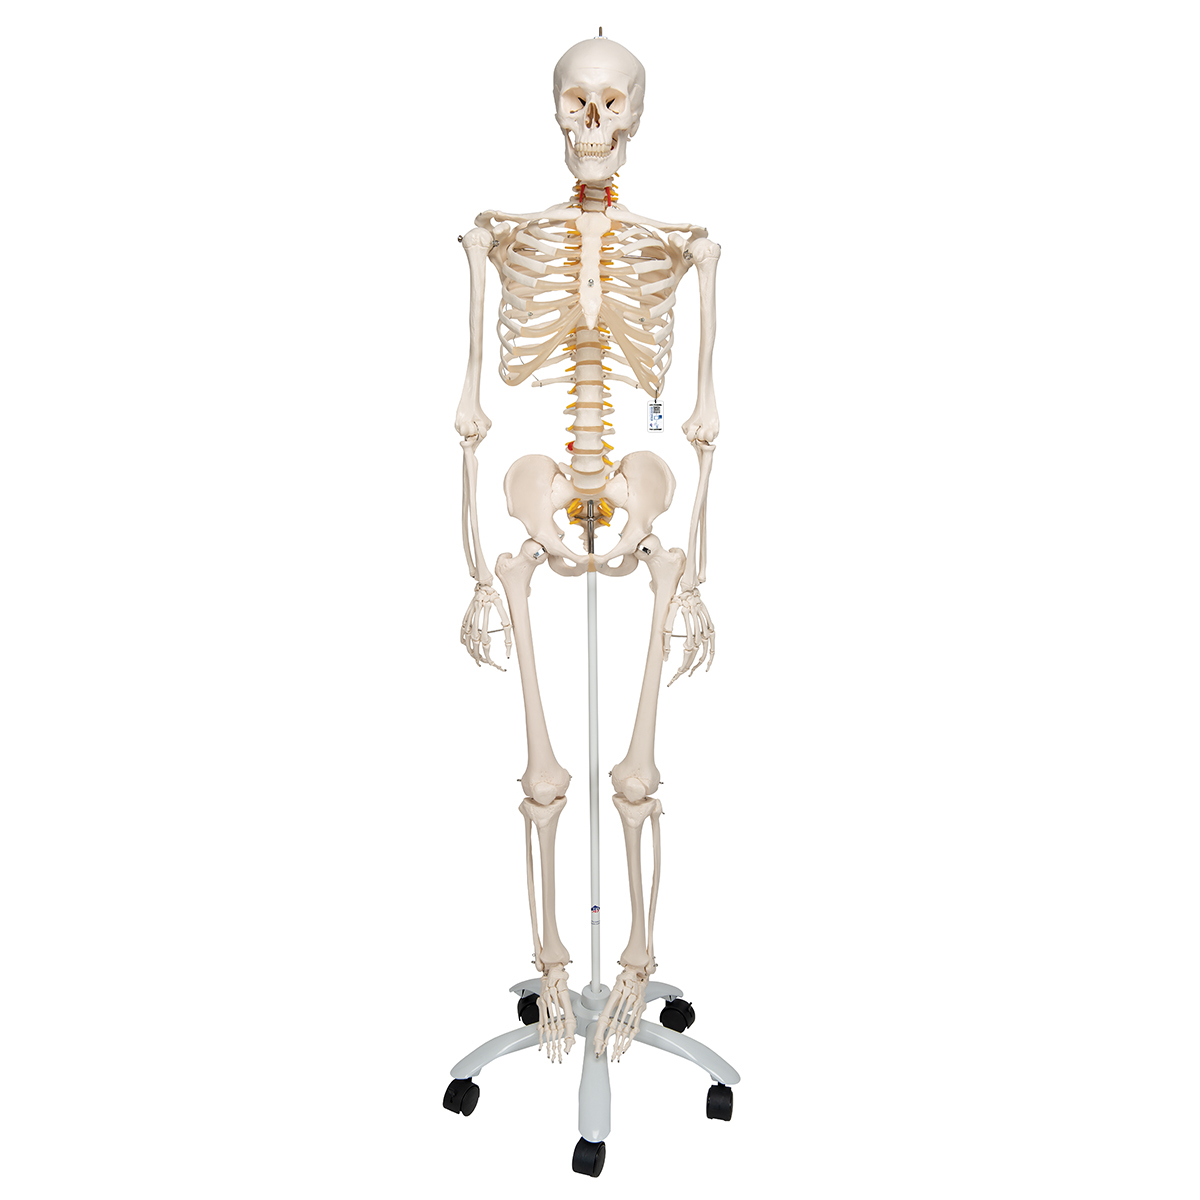 Esqueleto Fred A15, o esqueleto flexível em suporte de metal com 5 rolos -  1020178 - A15 - Modelo de esqueleto - tamanho natural - 3B Scientific